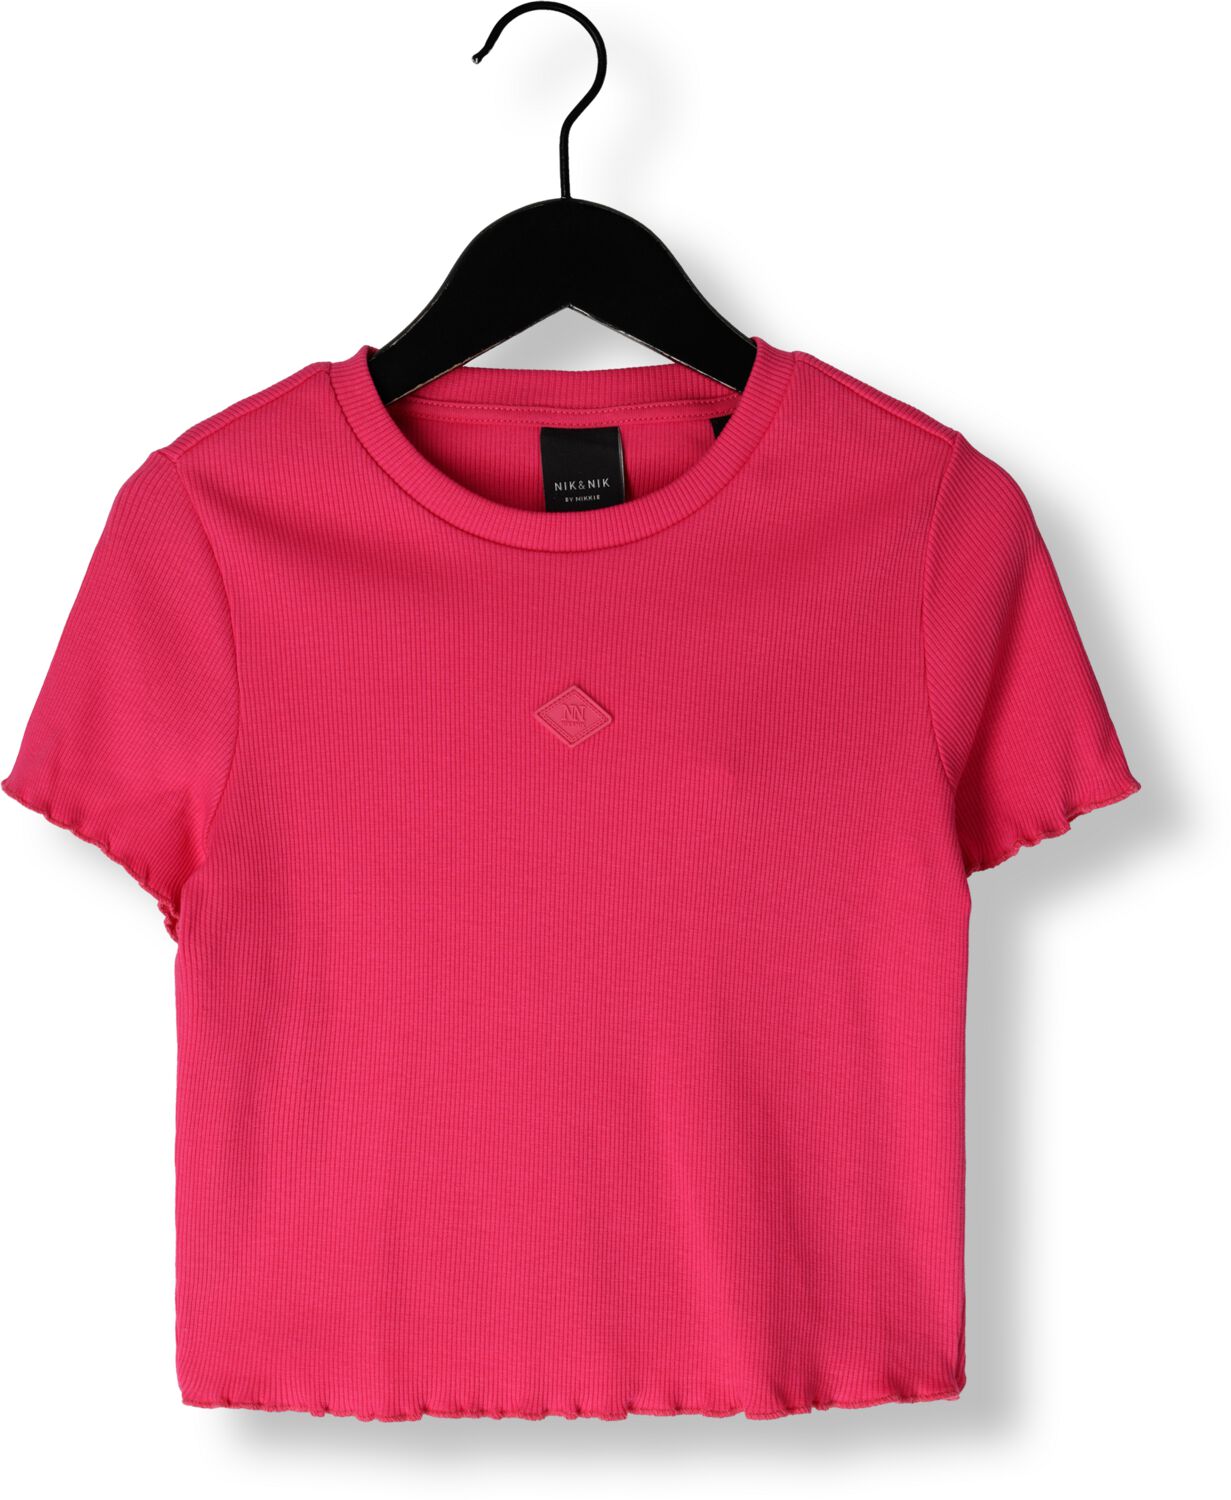 NIK&NIK T-shirt Rib fuchsia Roze Meisjes Stretchkatoen Ronde hals Effen 164